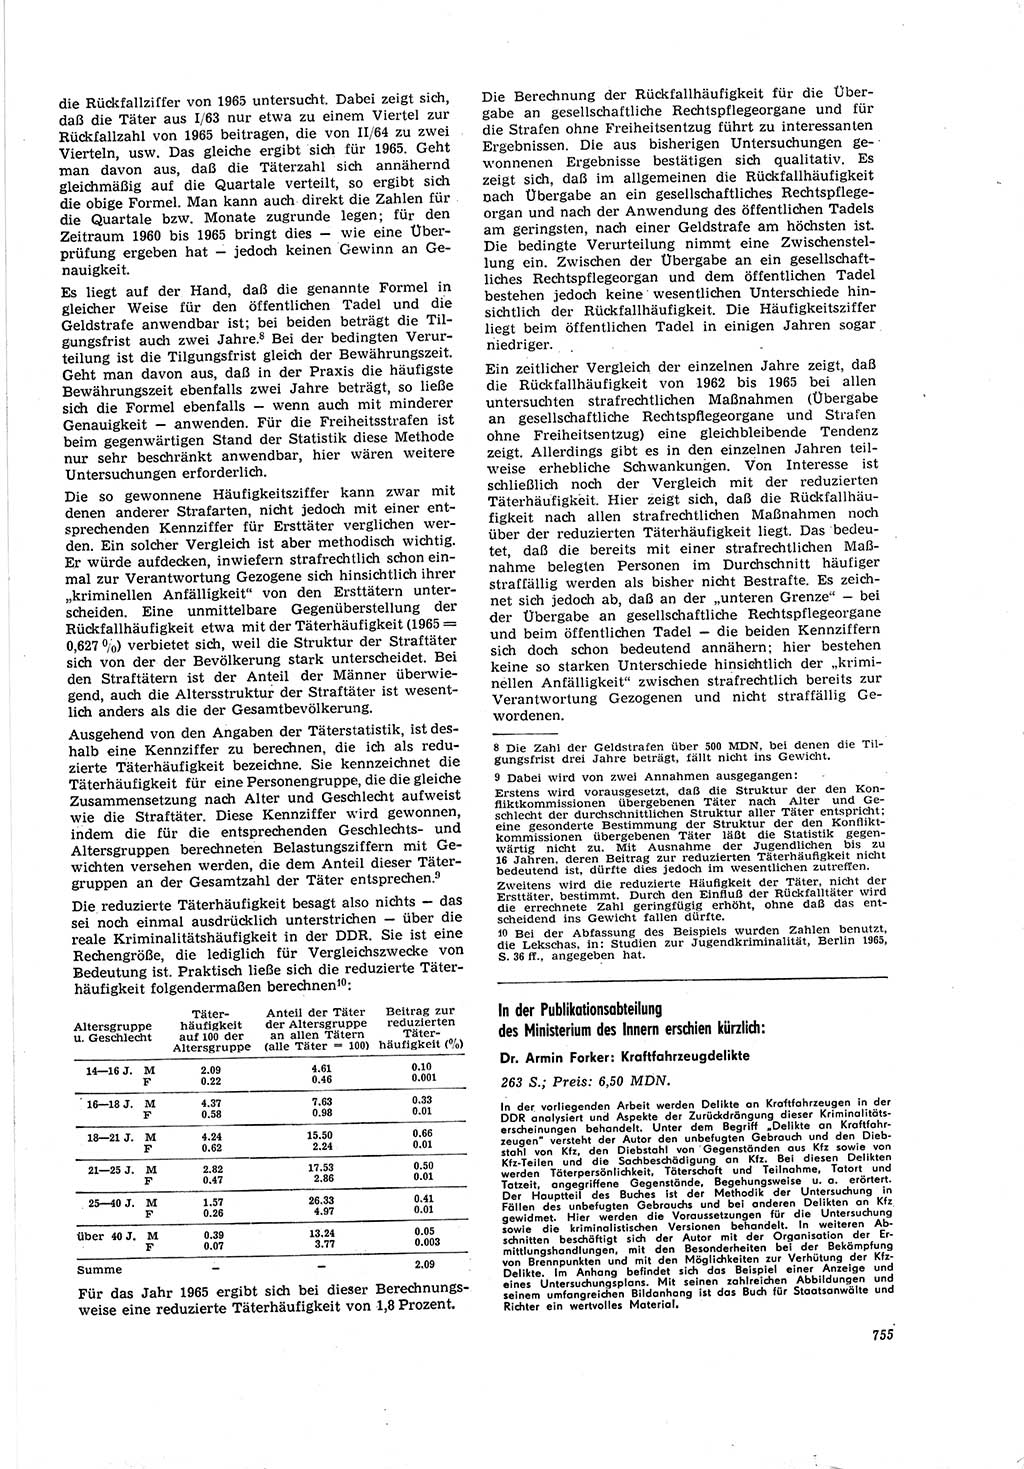 Neue Justiz (NJ), Zeitschrift für Recht und Rechtswissenschaft [Deutsche Demokratische Republik (DDR)], 20. Jahrgang 1966, Seite 755 (NJ DDR 1966, S. 755)